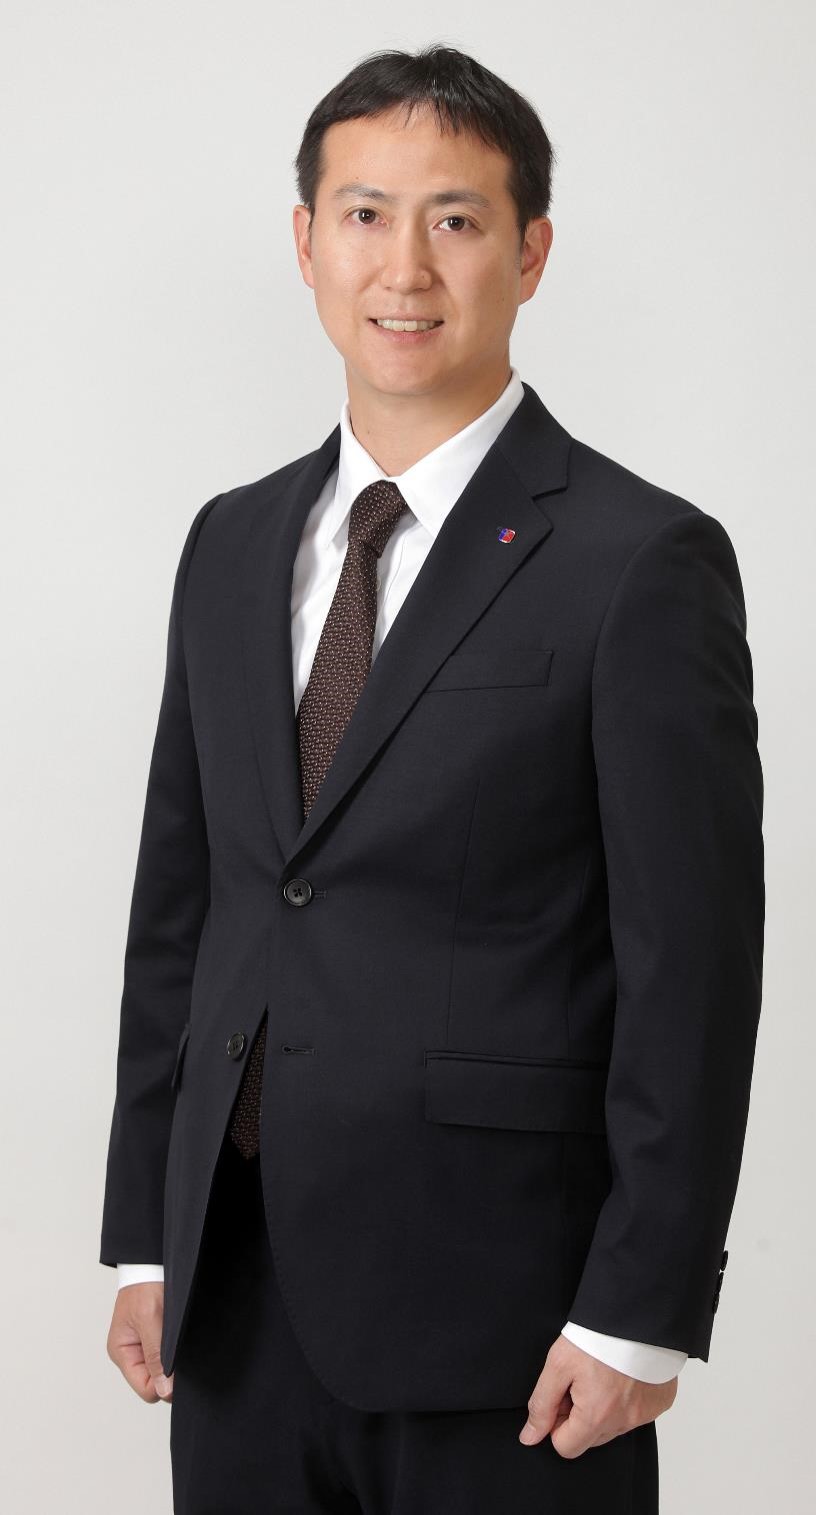 Koichi Ito President
<br />